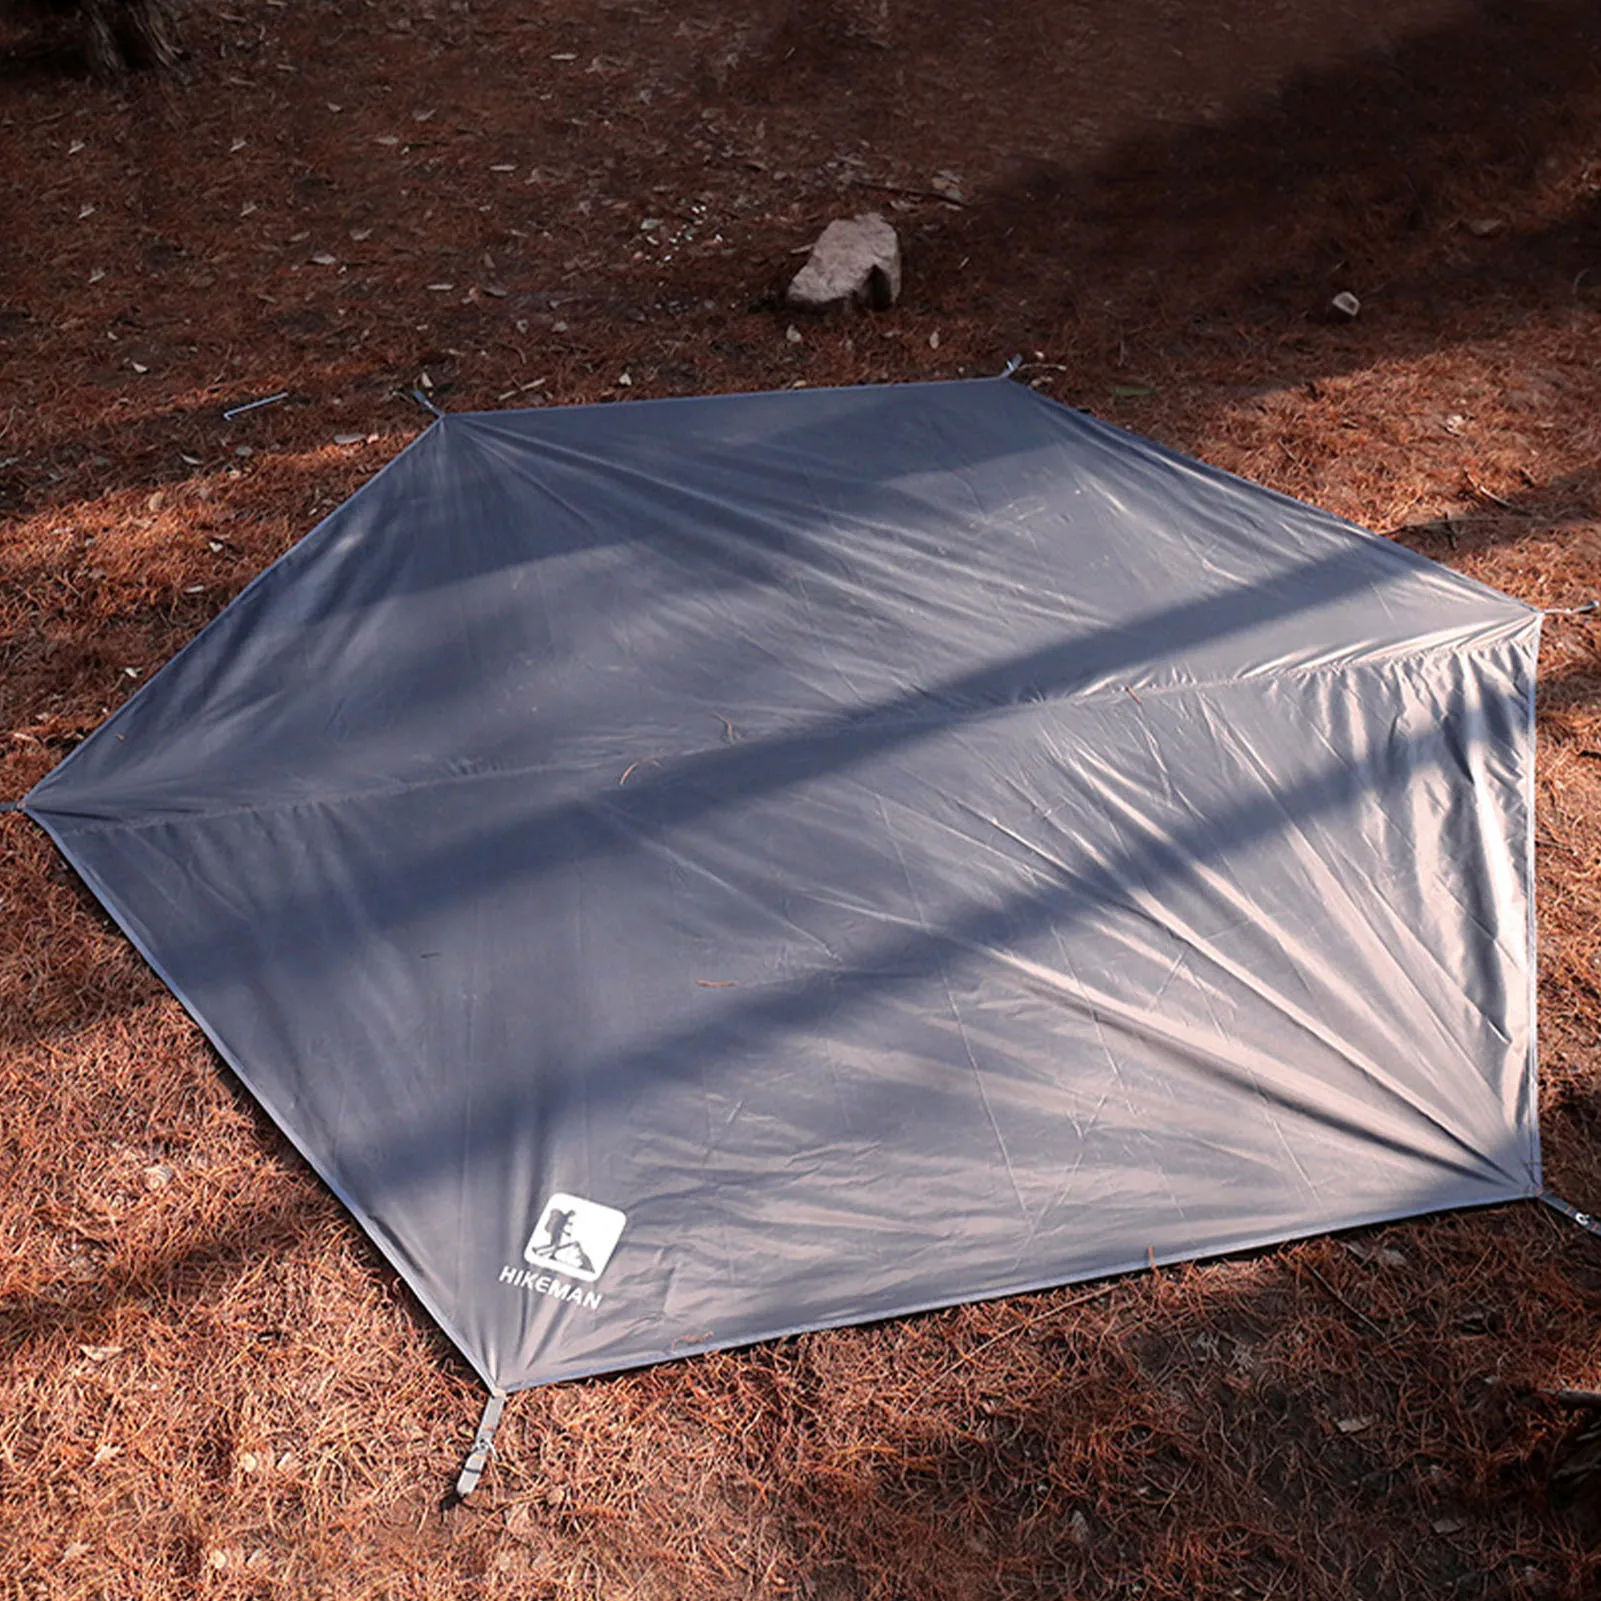 Telo esagonale per tenda telo da terra esagonale impermeabile tappetino da terra per campeggio escursionismo Picnic zaino in spalla (senza picchetti per tenda)